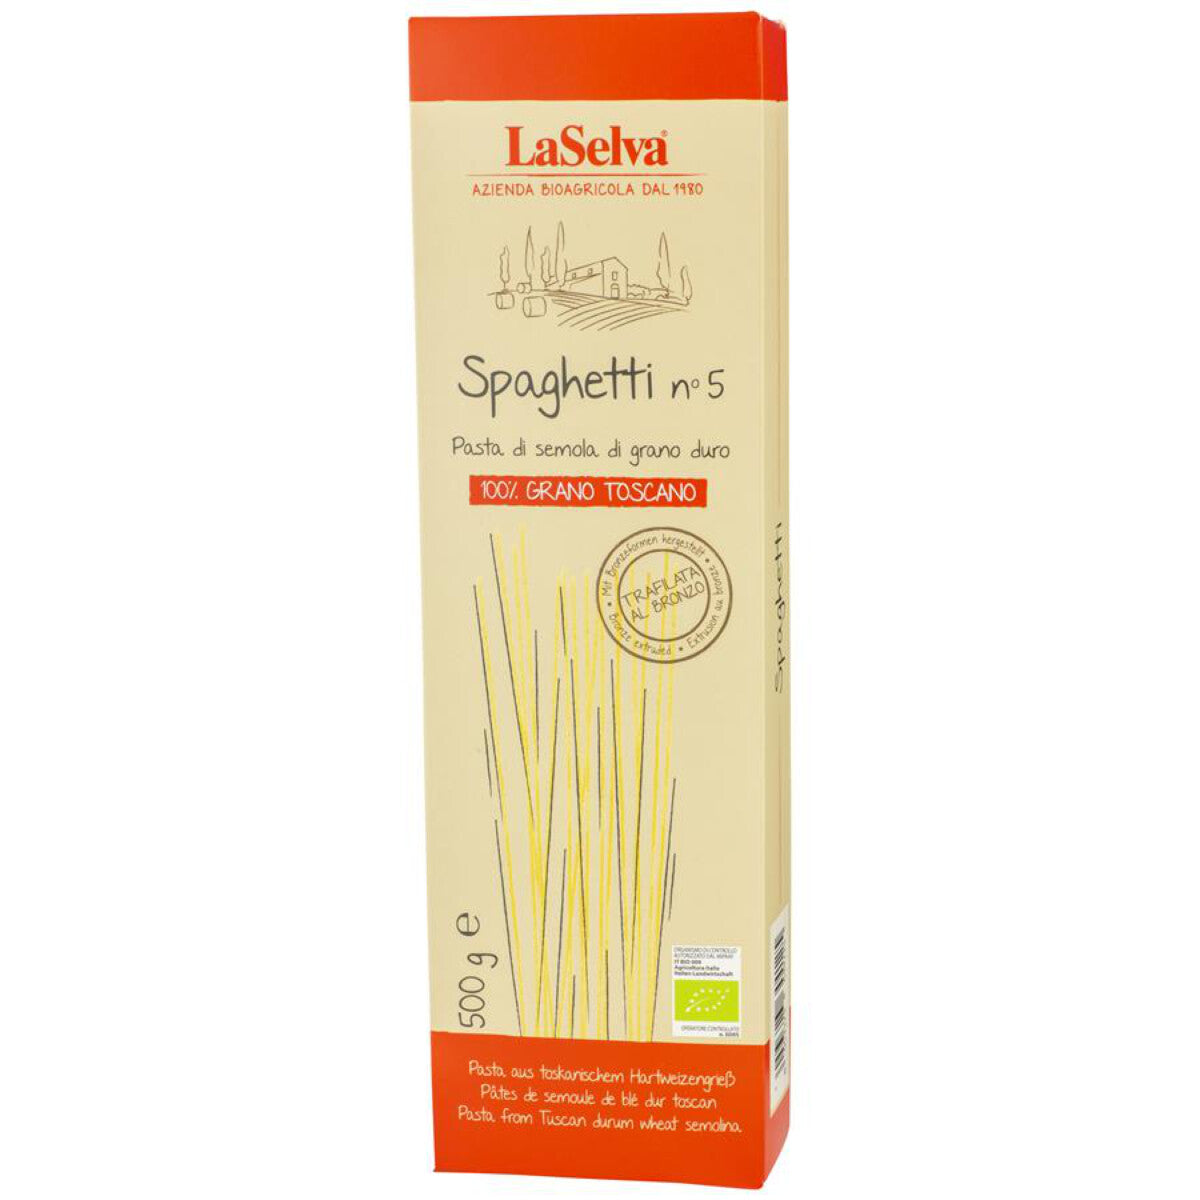 LA SELVA Spaghetti No.5 - 500 g